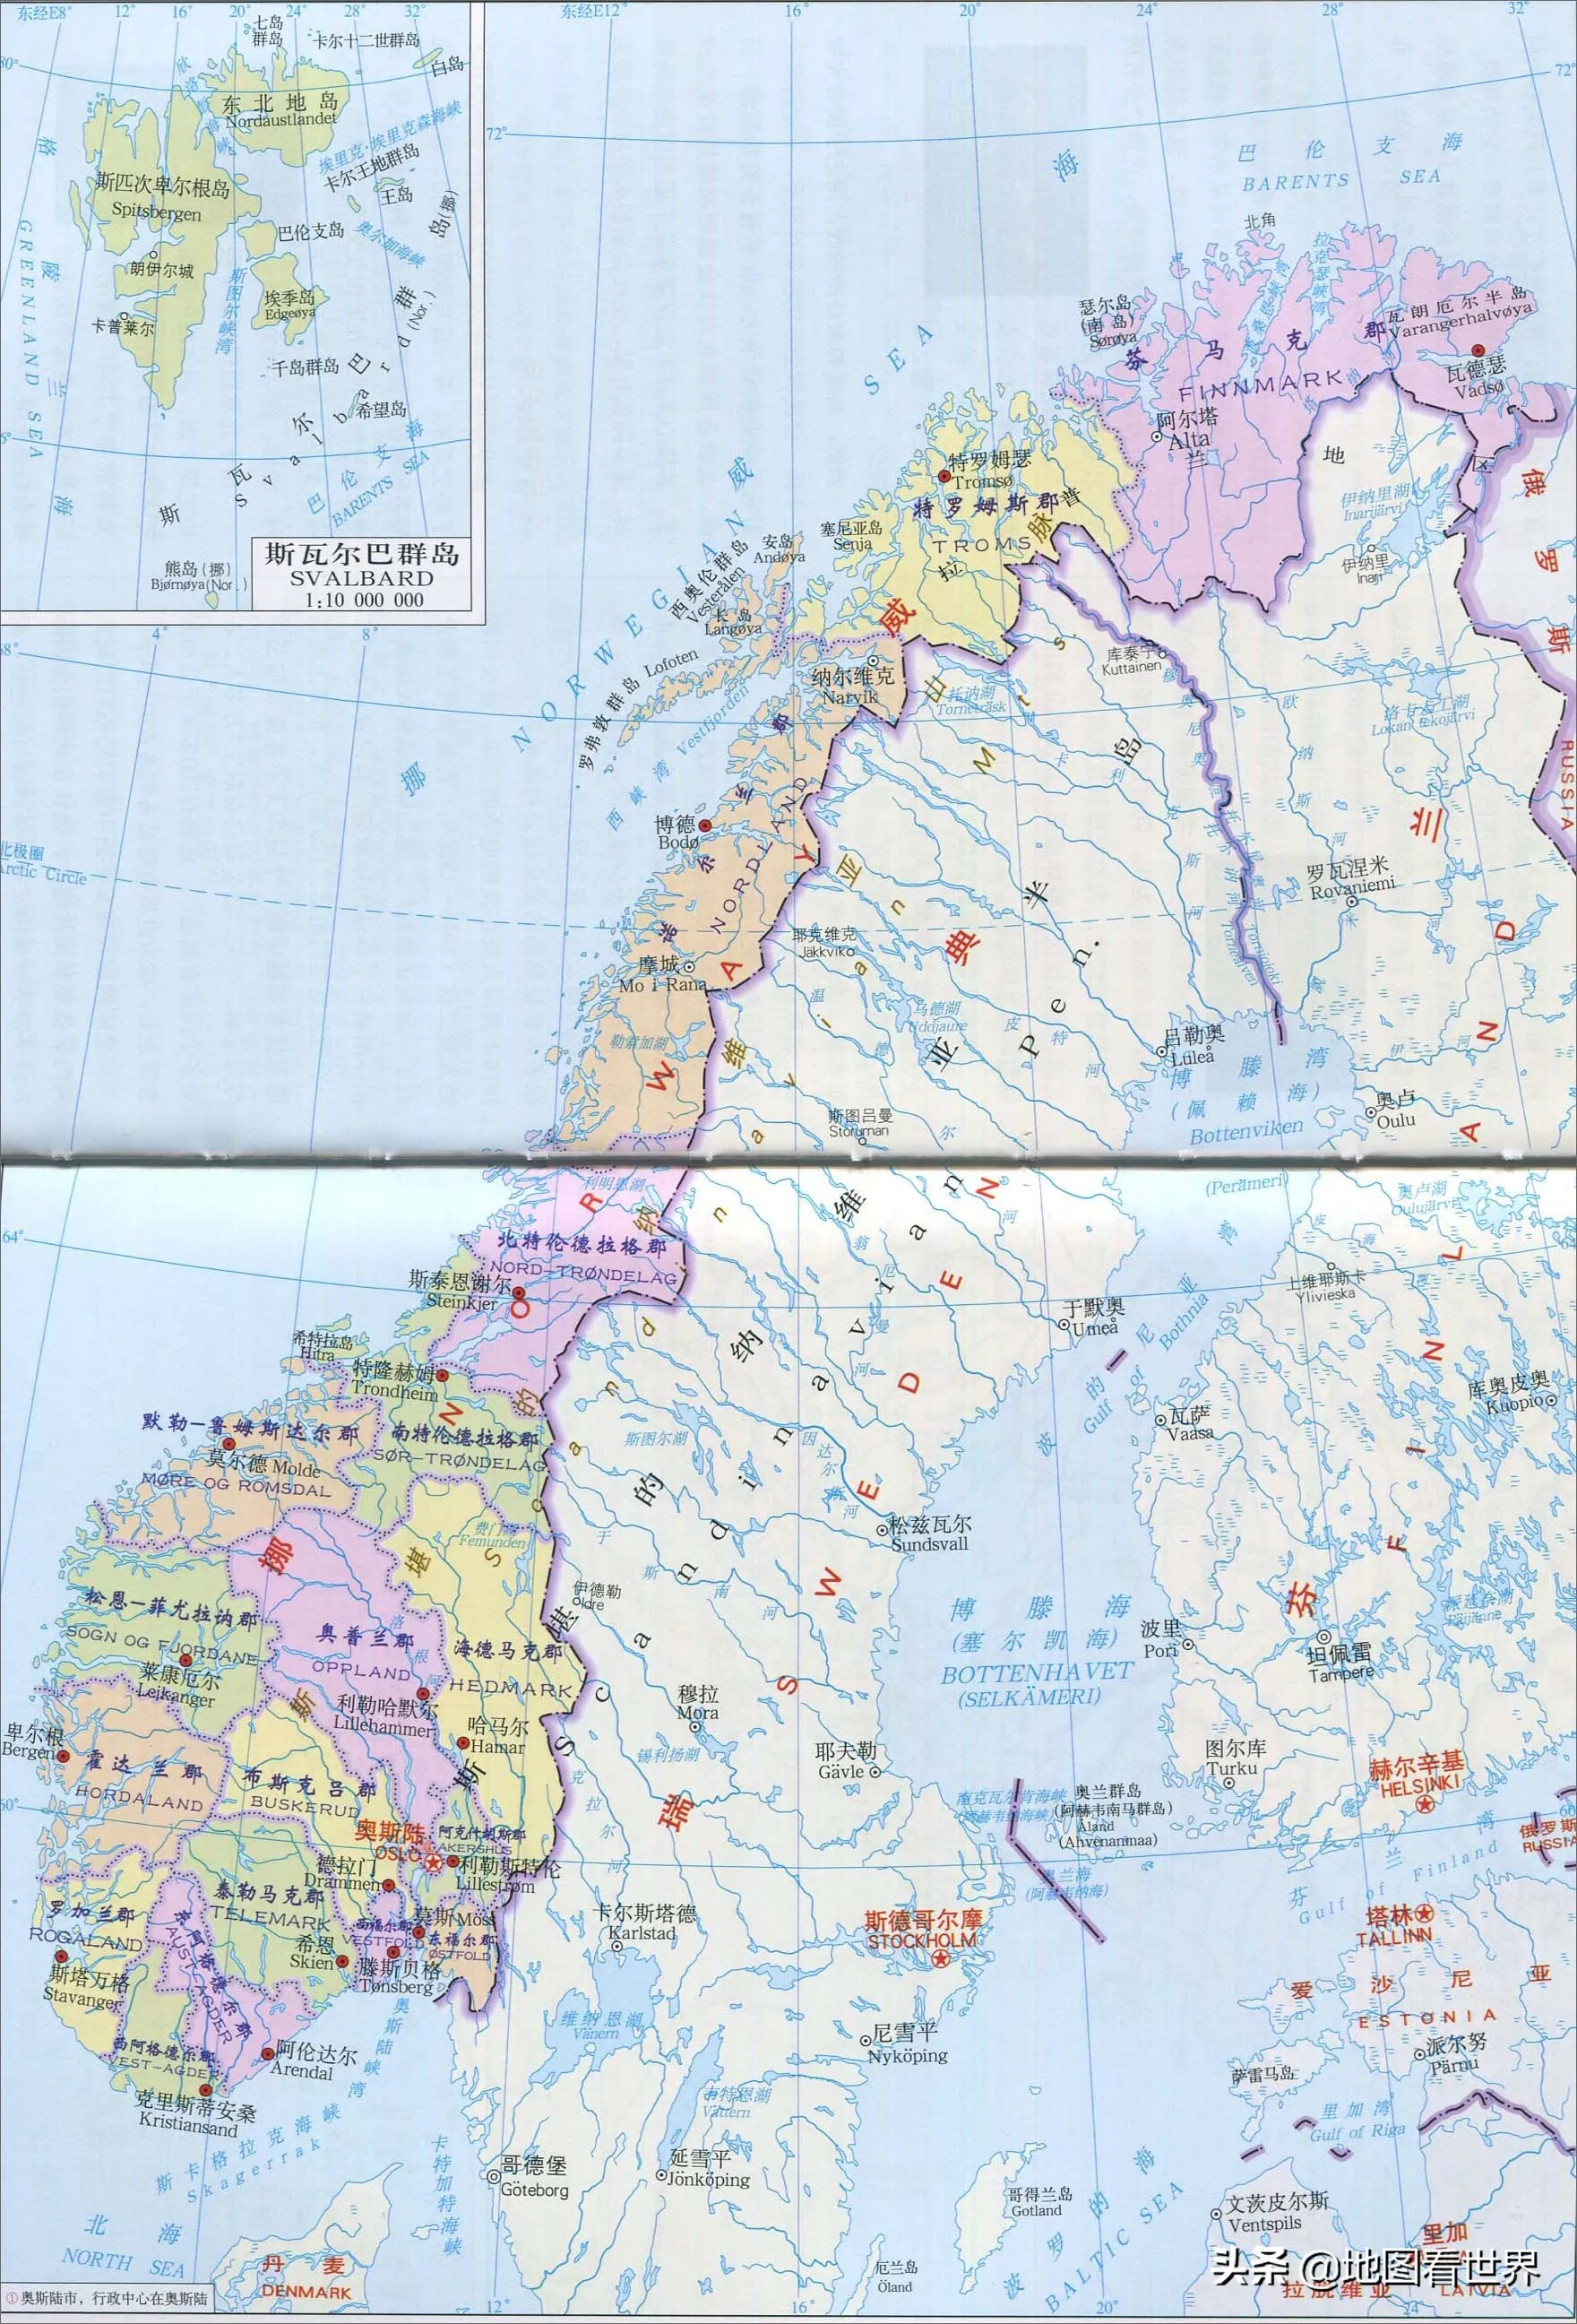 挪威地理位置在哪里 | 挪威这个国家在地球的哪个位置地方